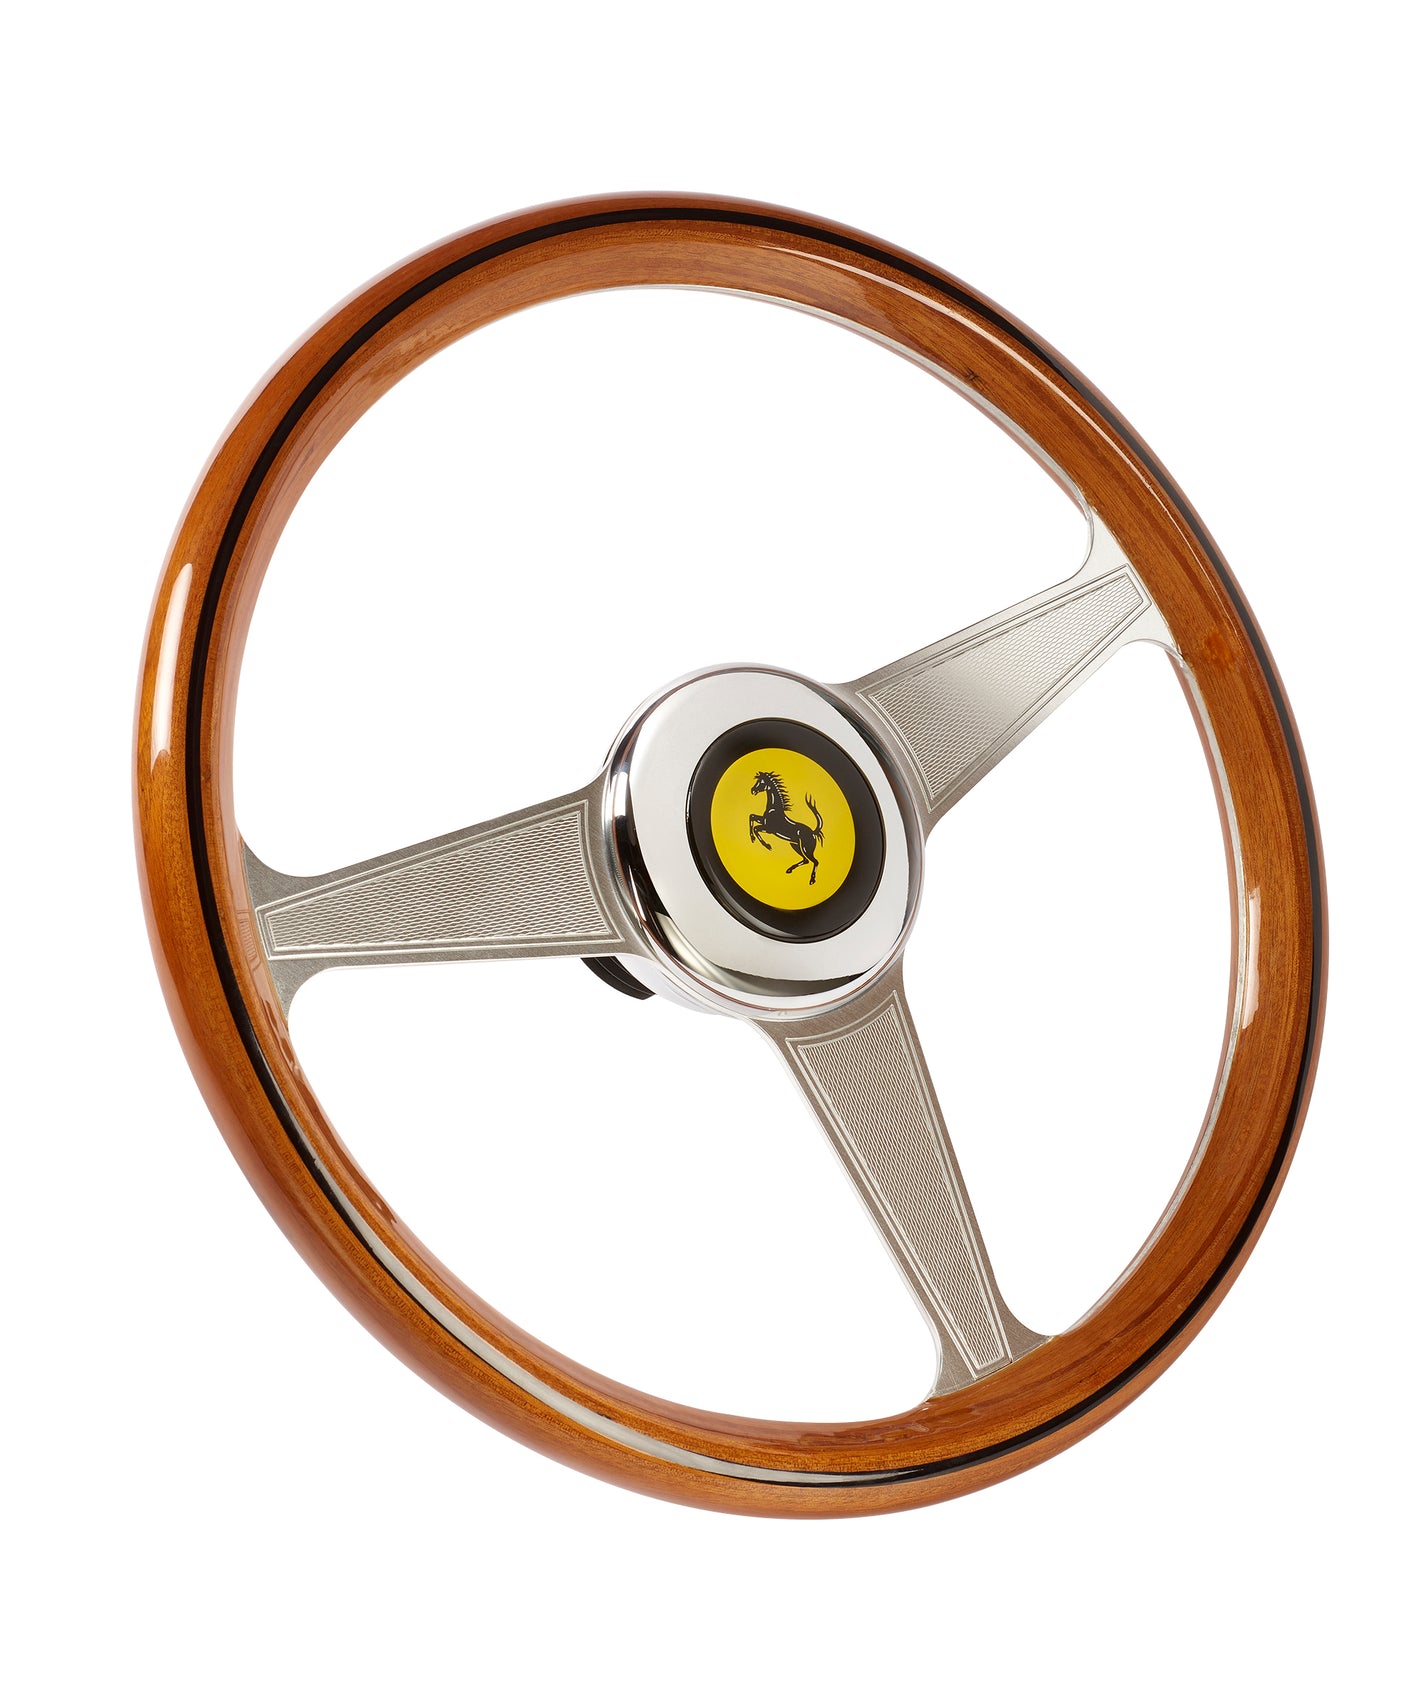 Thrustmaster Ferrari 250 GTO Wheel Add On